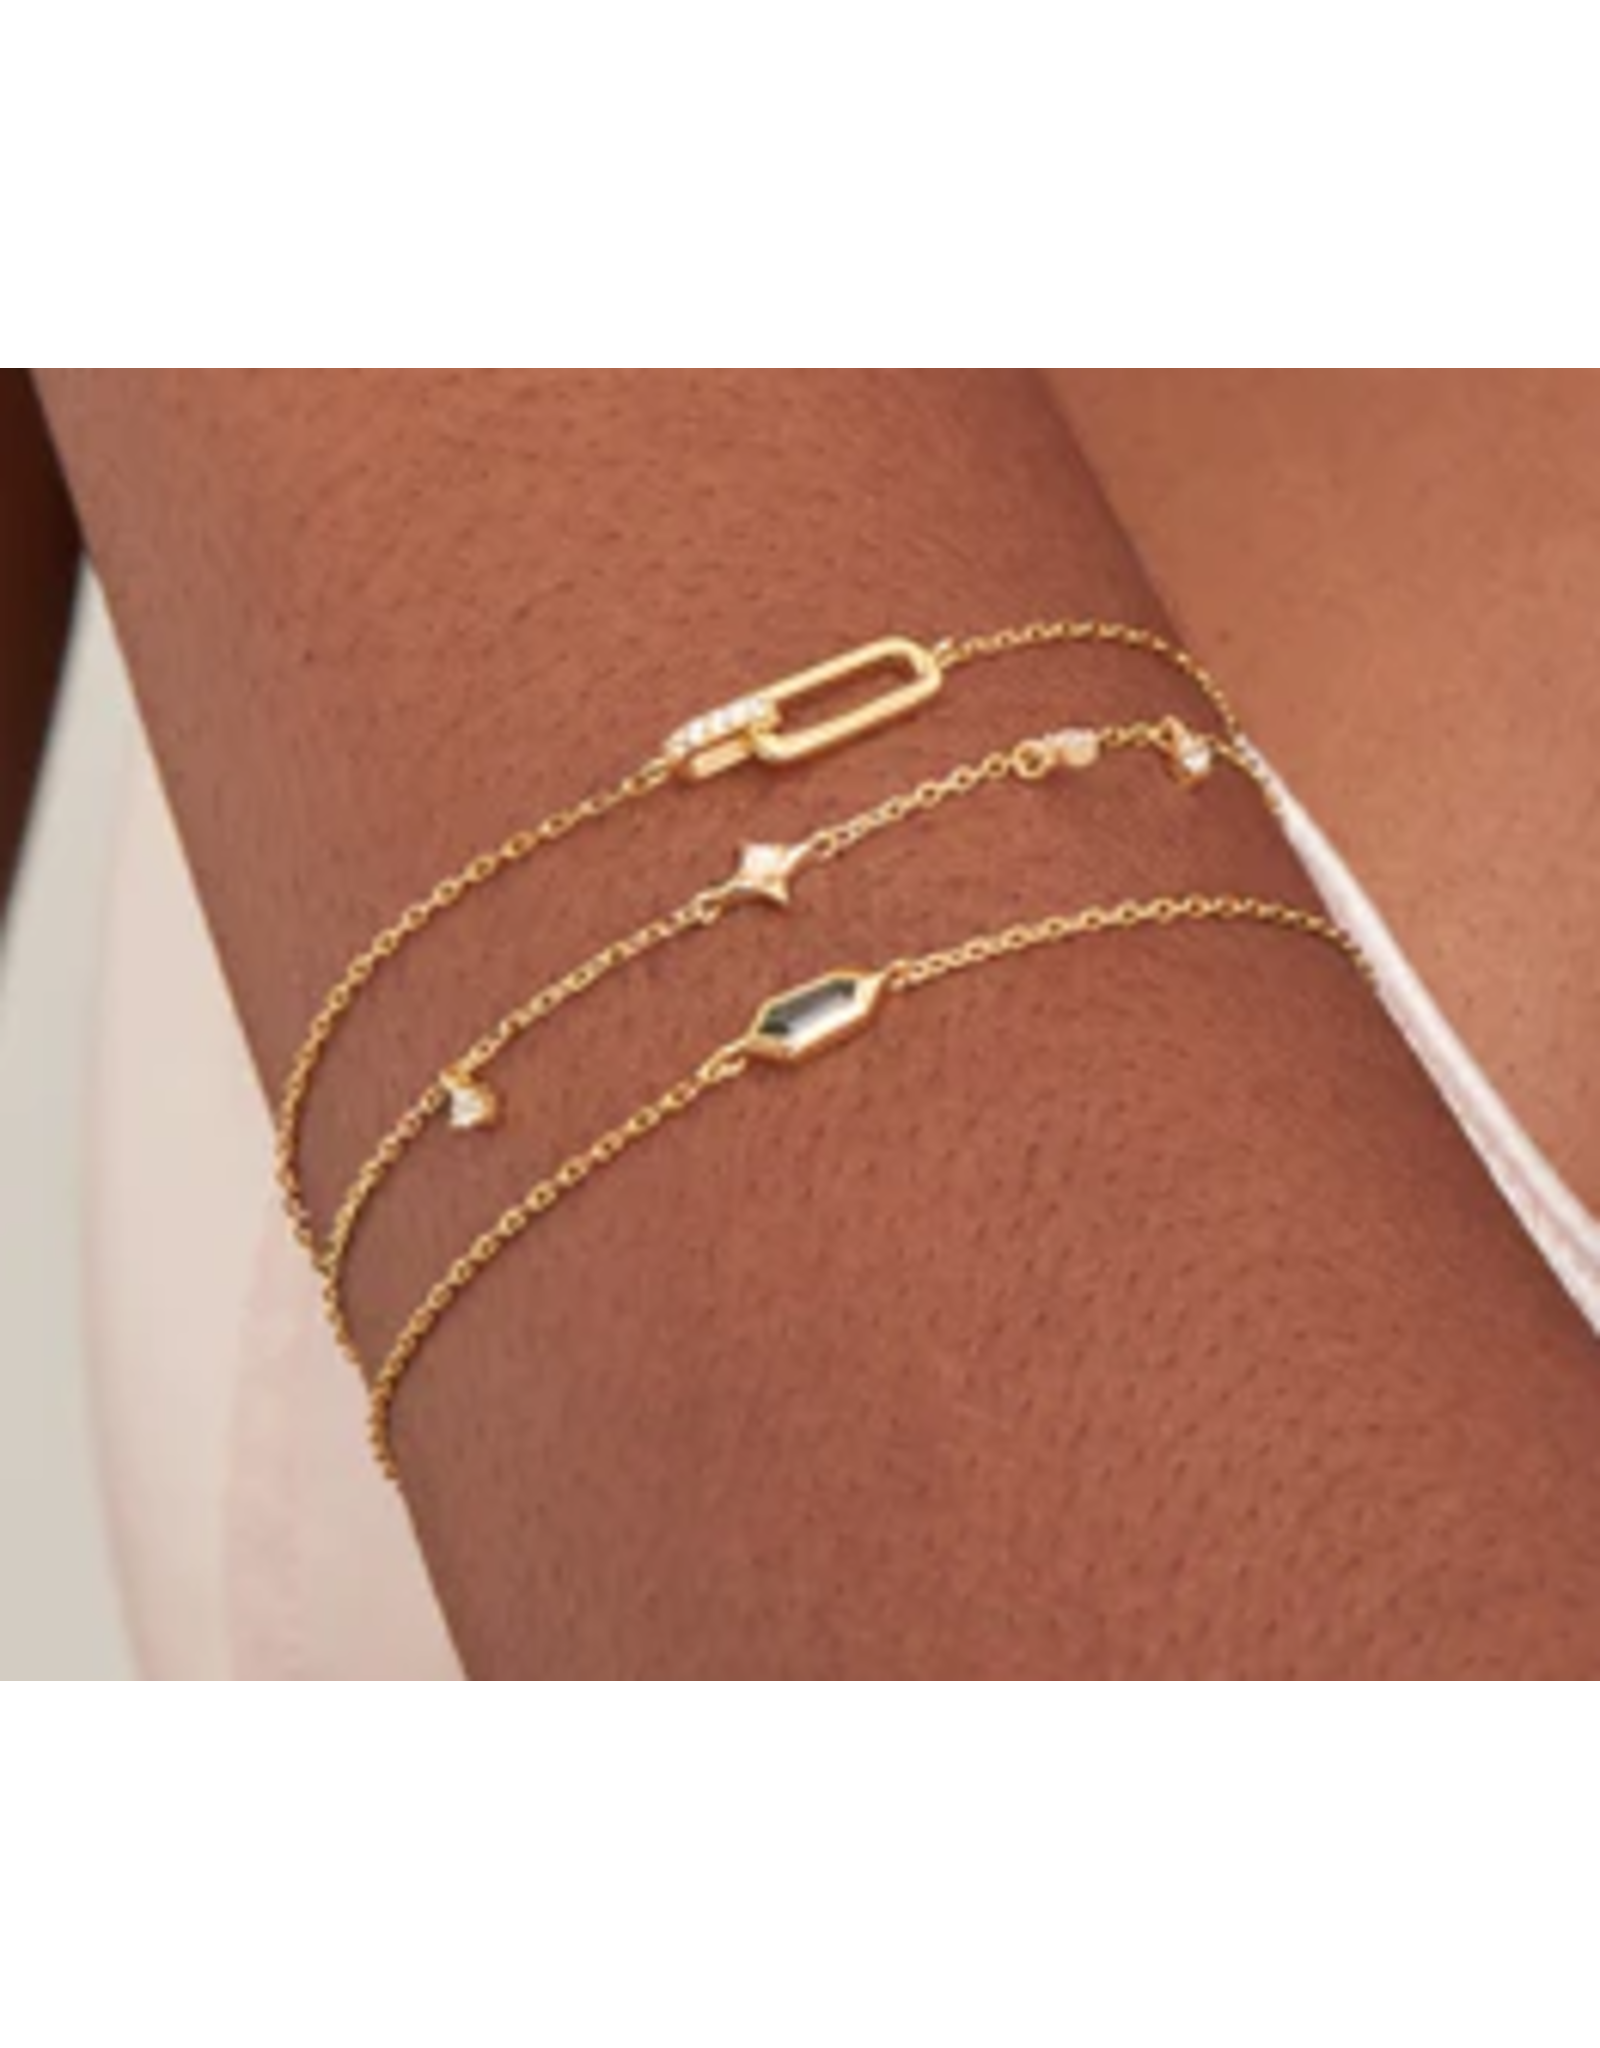 Ania Haie Ania Haie Rising Star Opal Bracelet, gold